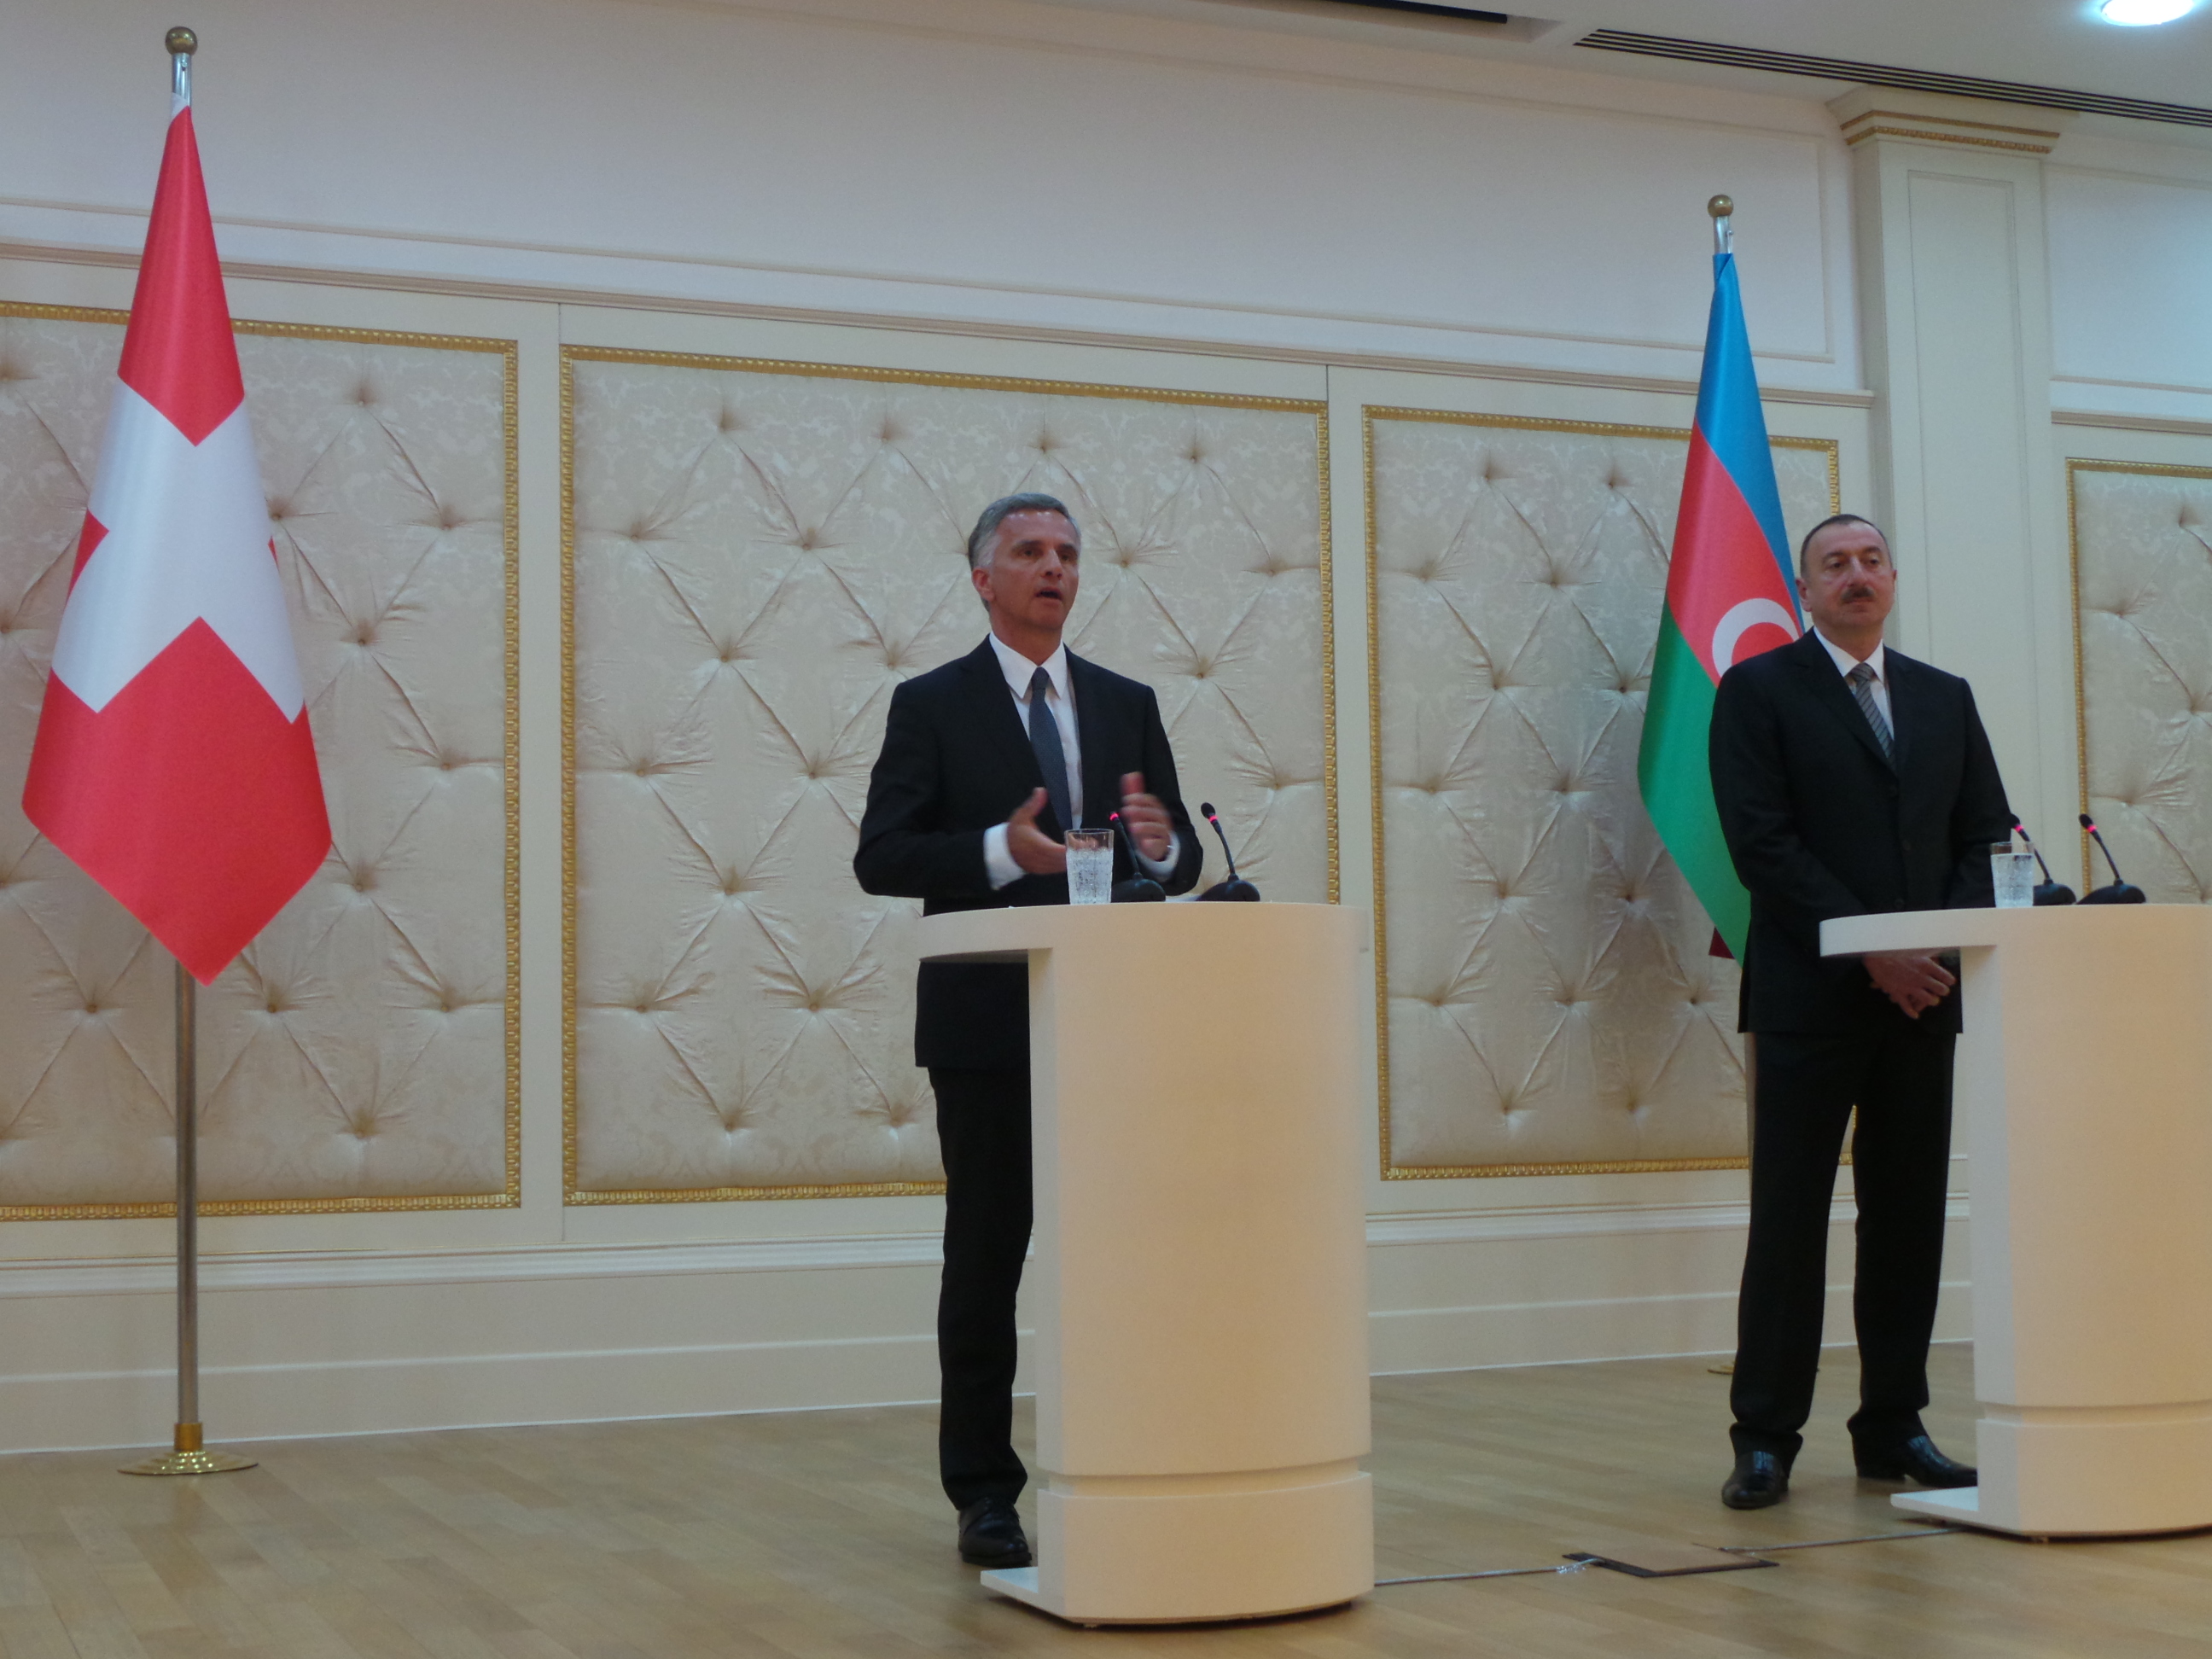 Le président de la Confédération Didier Burkhalter en compagnie du président azerbaïdjanais Ilham Aliyev